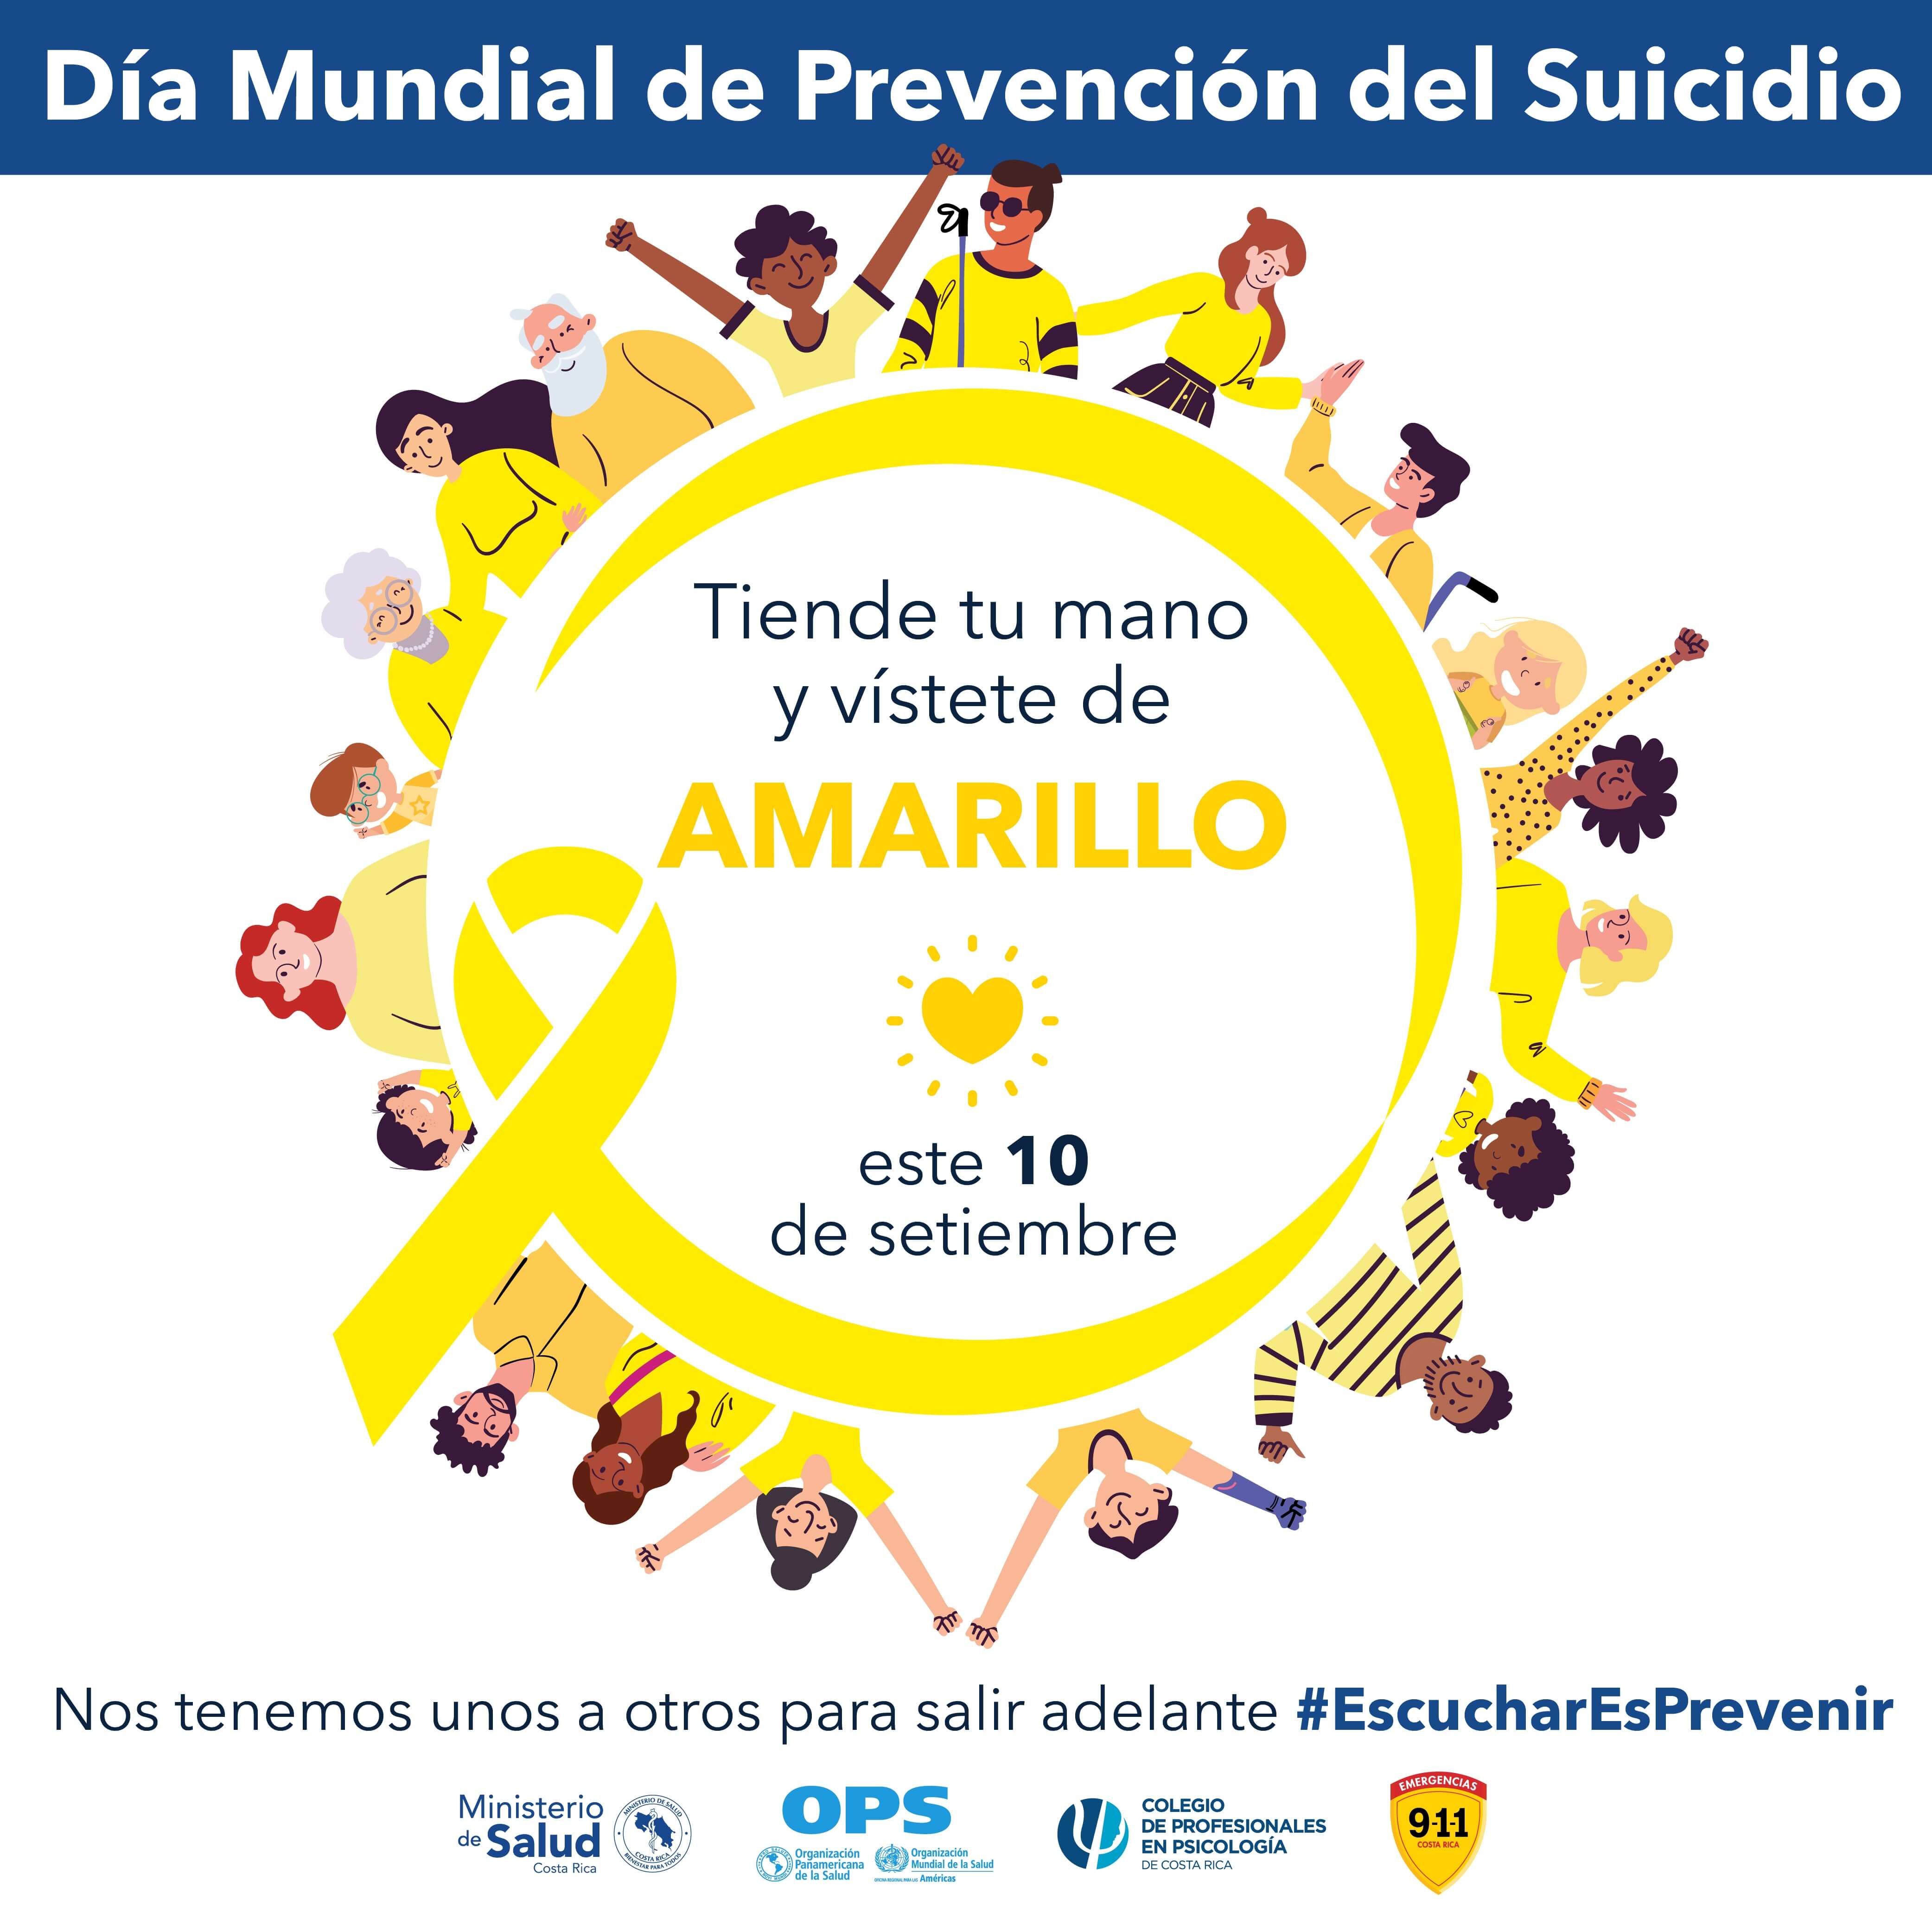 UNA Comunica - UNA se suma a campaña nacional de prevención del suicidio